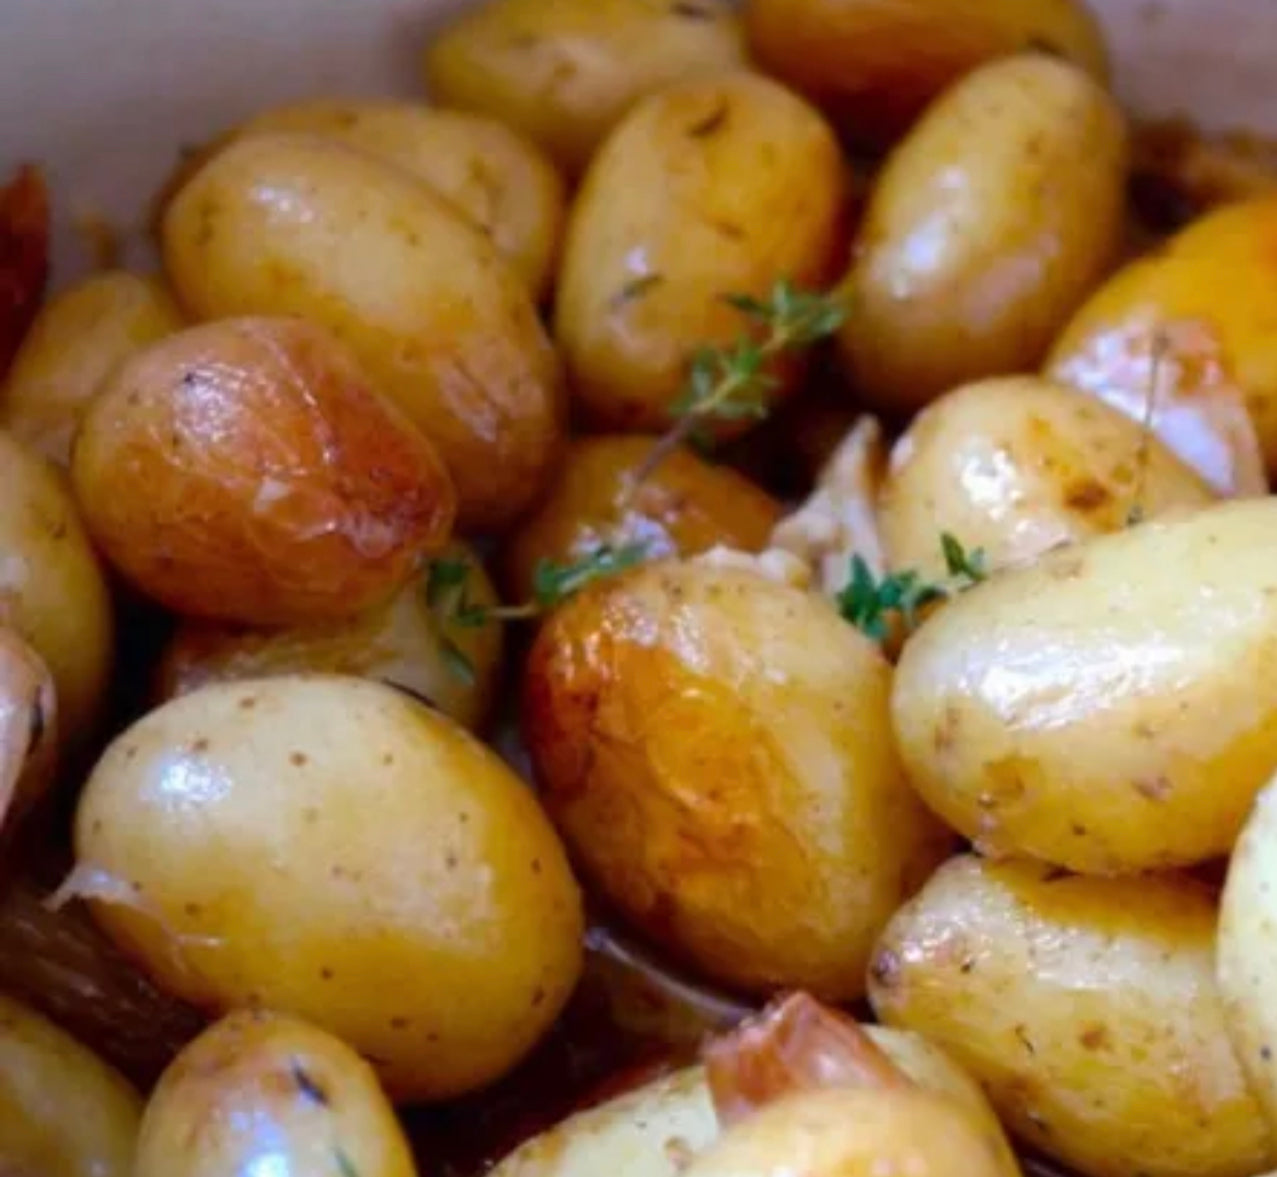 Pommes de terre grenailles rissolées persillées - 400g